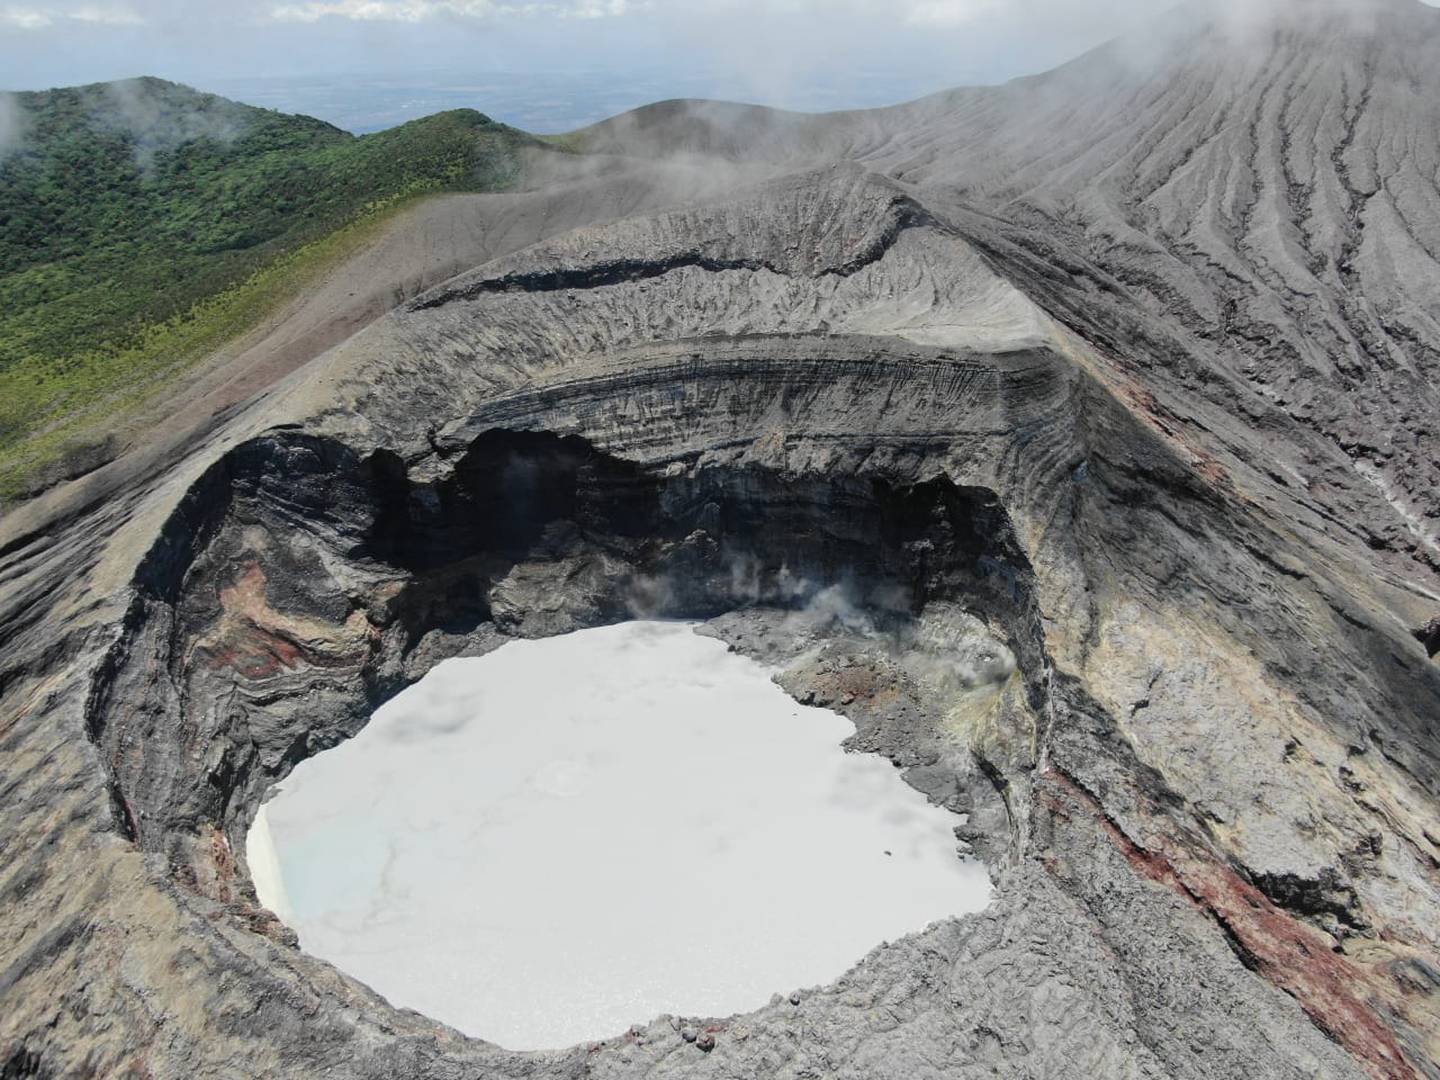 El cráter activo del Rincón de la Vieja tiene la forma de un ojo gigante abierto hacia la atmósfera. En los últimos ocho días ha registrado tres erupciones pequeñas. Foto: Geoffroy Avard, captada en marzo 2021.